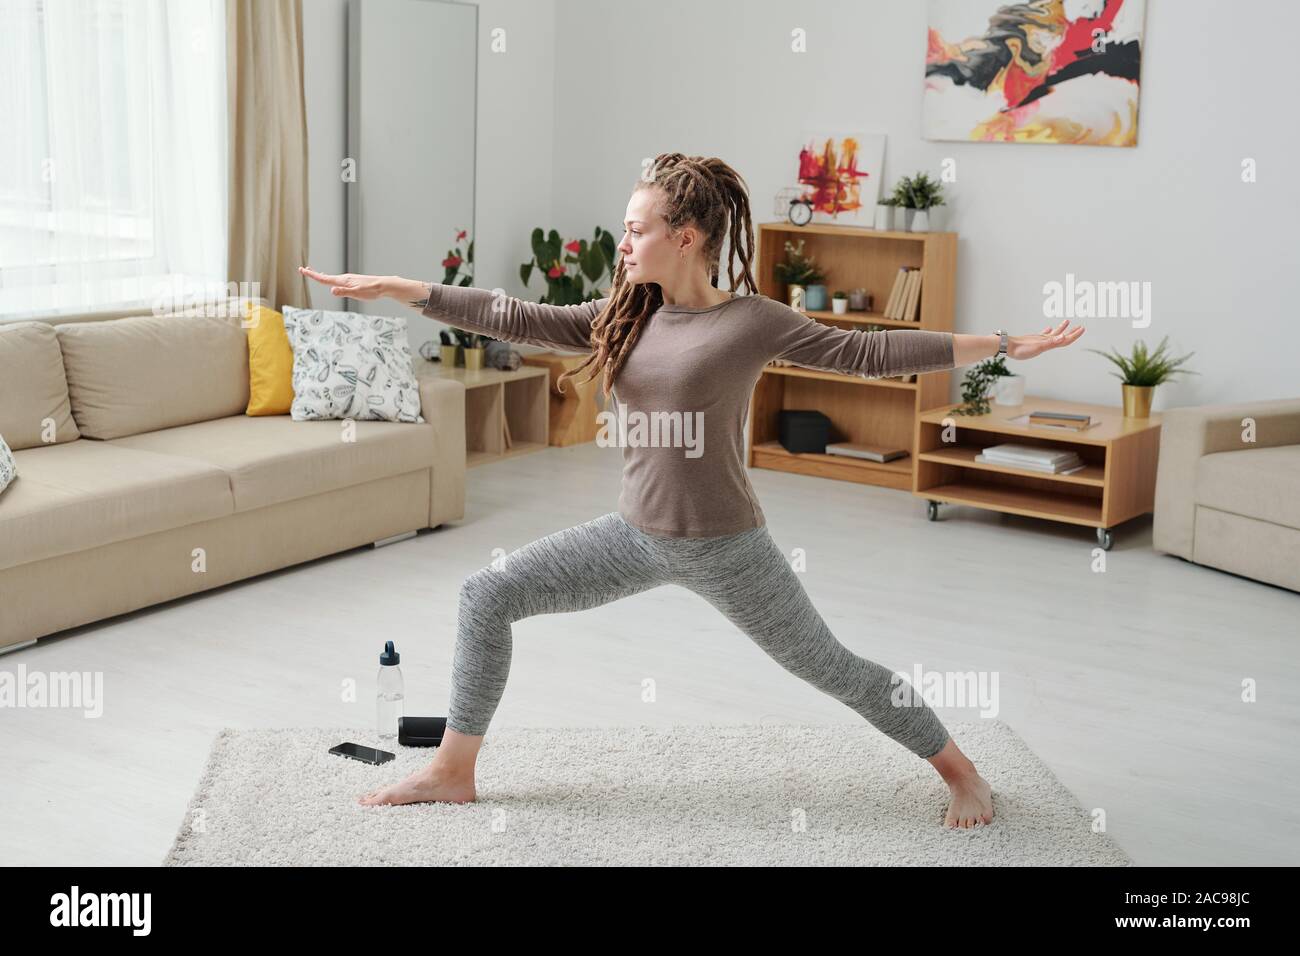 Montare la ragazza di leggins e pullover stretching gambe e braccia durante l'esercizio Foto Stock